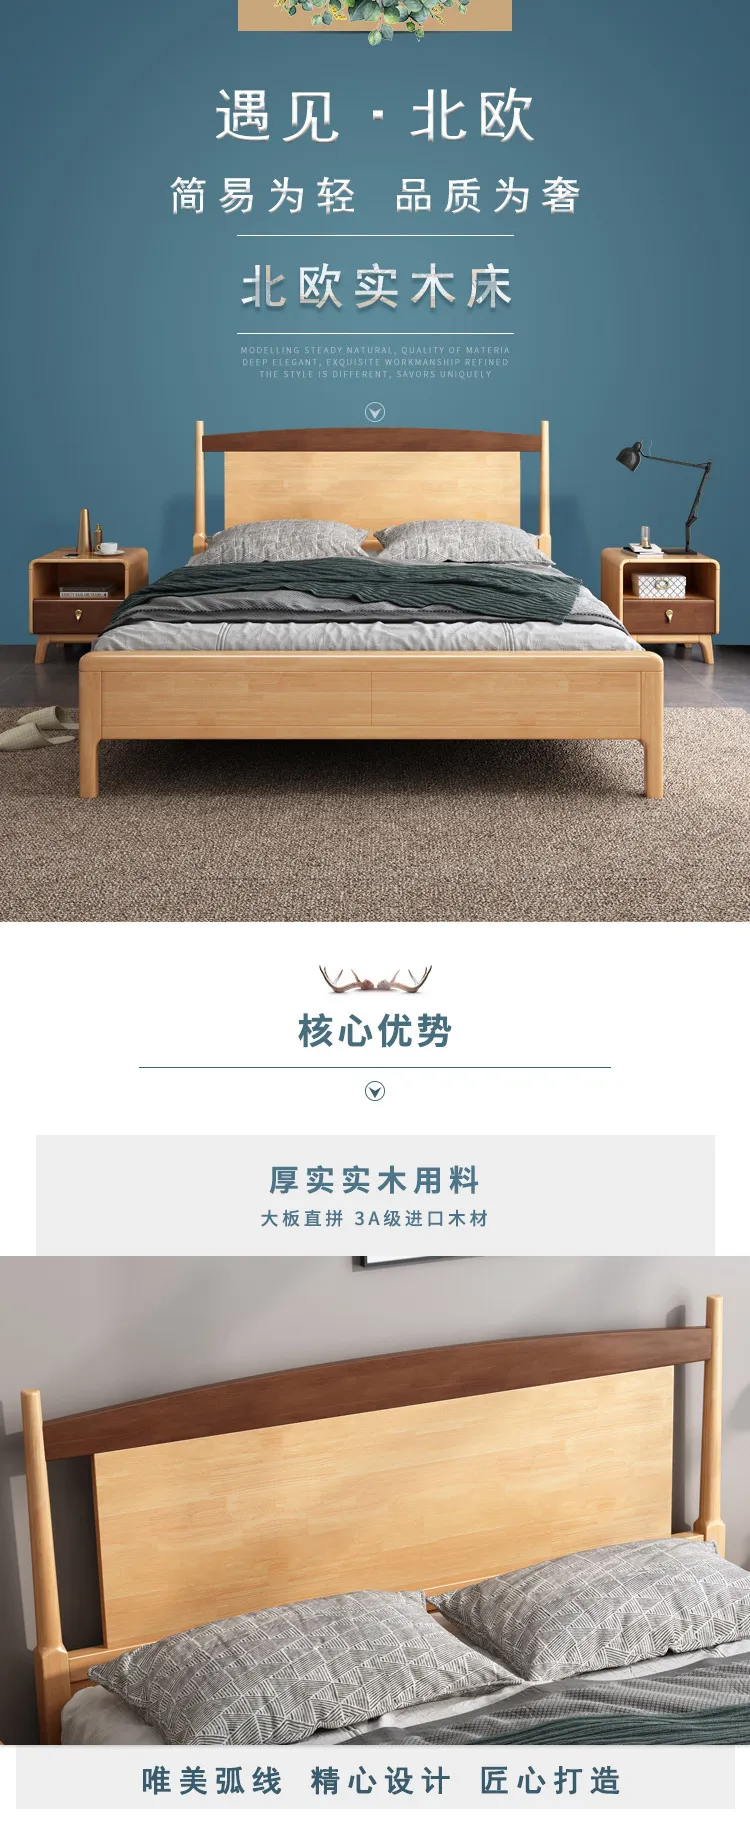 华松居 北欧实木床现代简约家用双人床经济型床 DM-607-K床(图1)